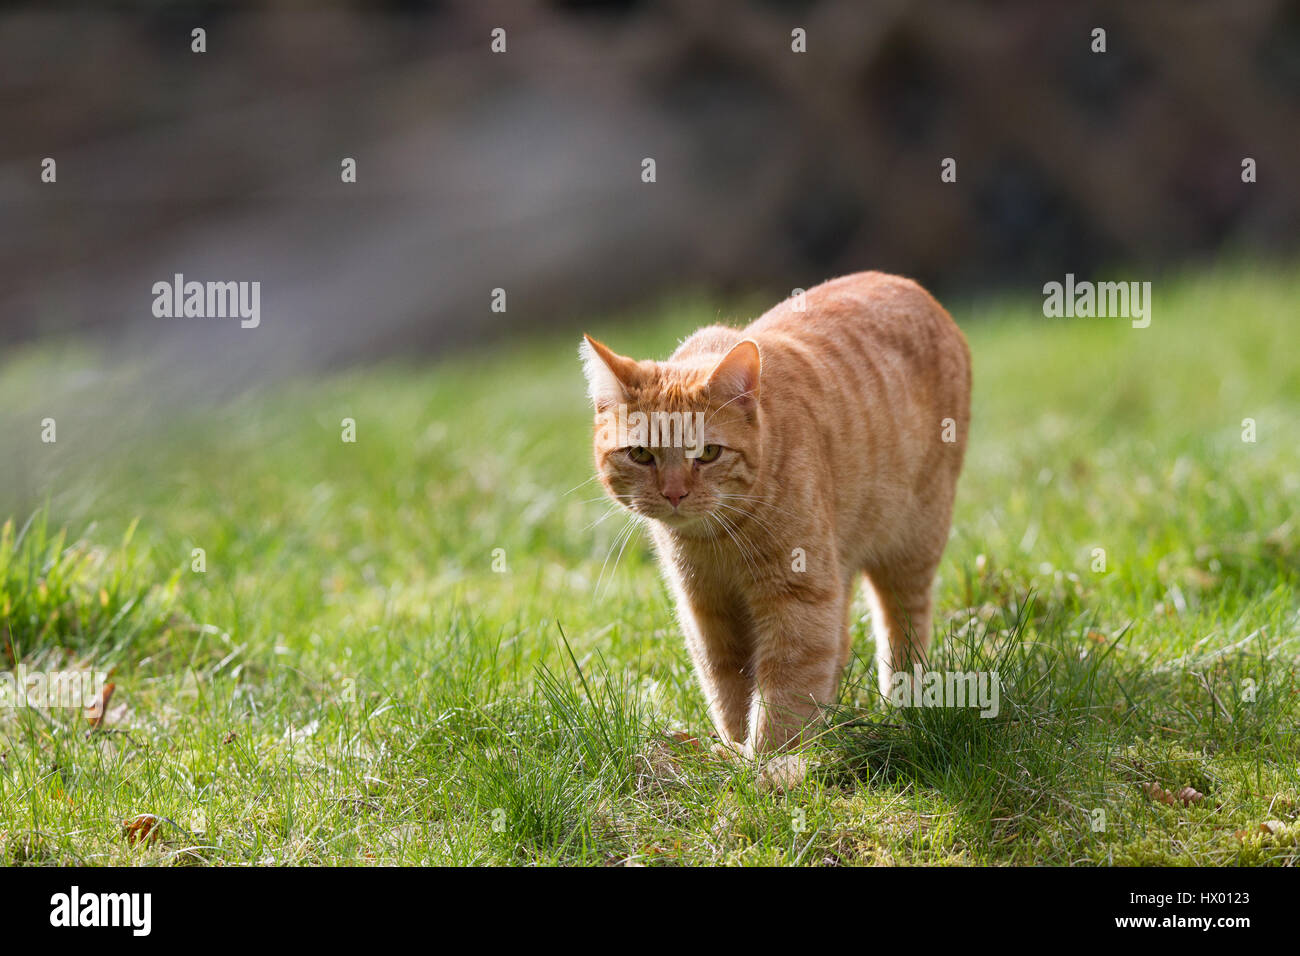 Ginger tom chat domestique (Felis catus) marche à travers le jardin en herbe Banque D'Images